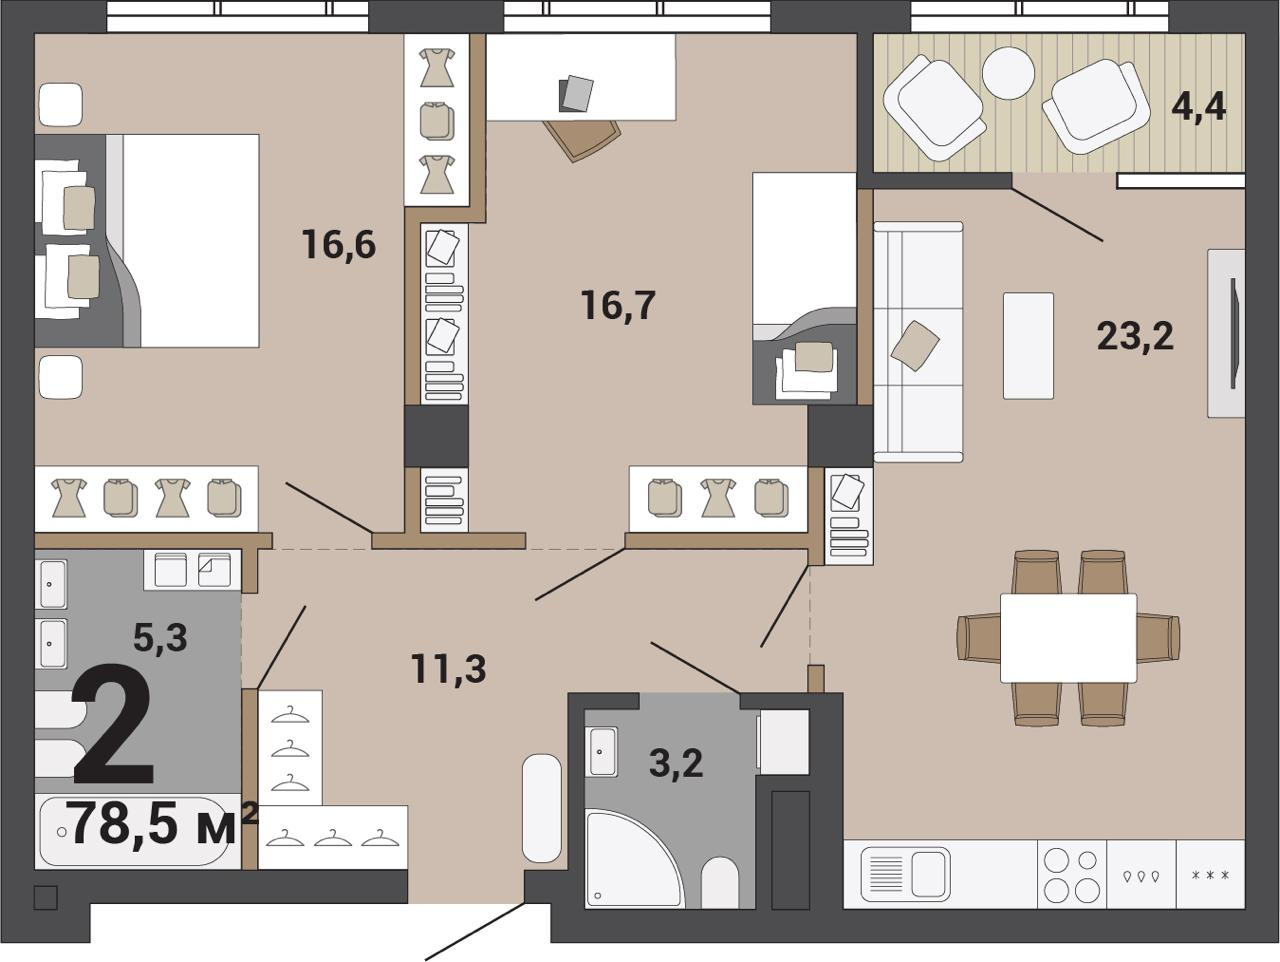 Квартира с кухней-гостиной, двумя спальнями и двумя санузлами. В каждой спальне есть место под гардероб <br>